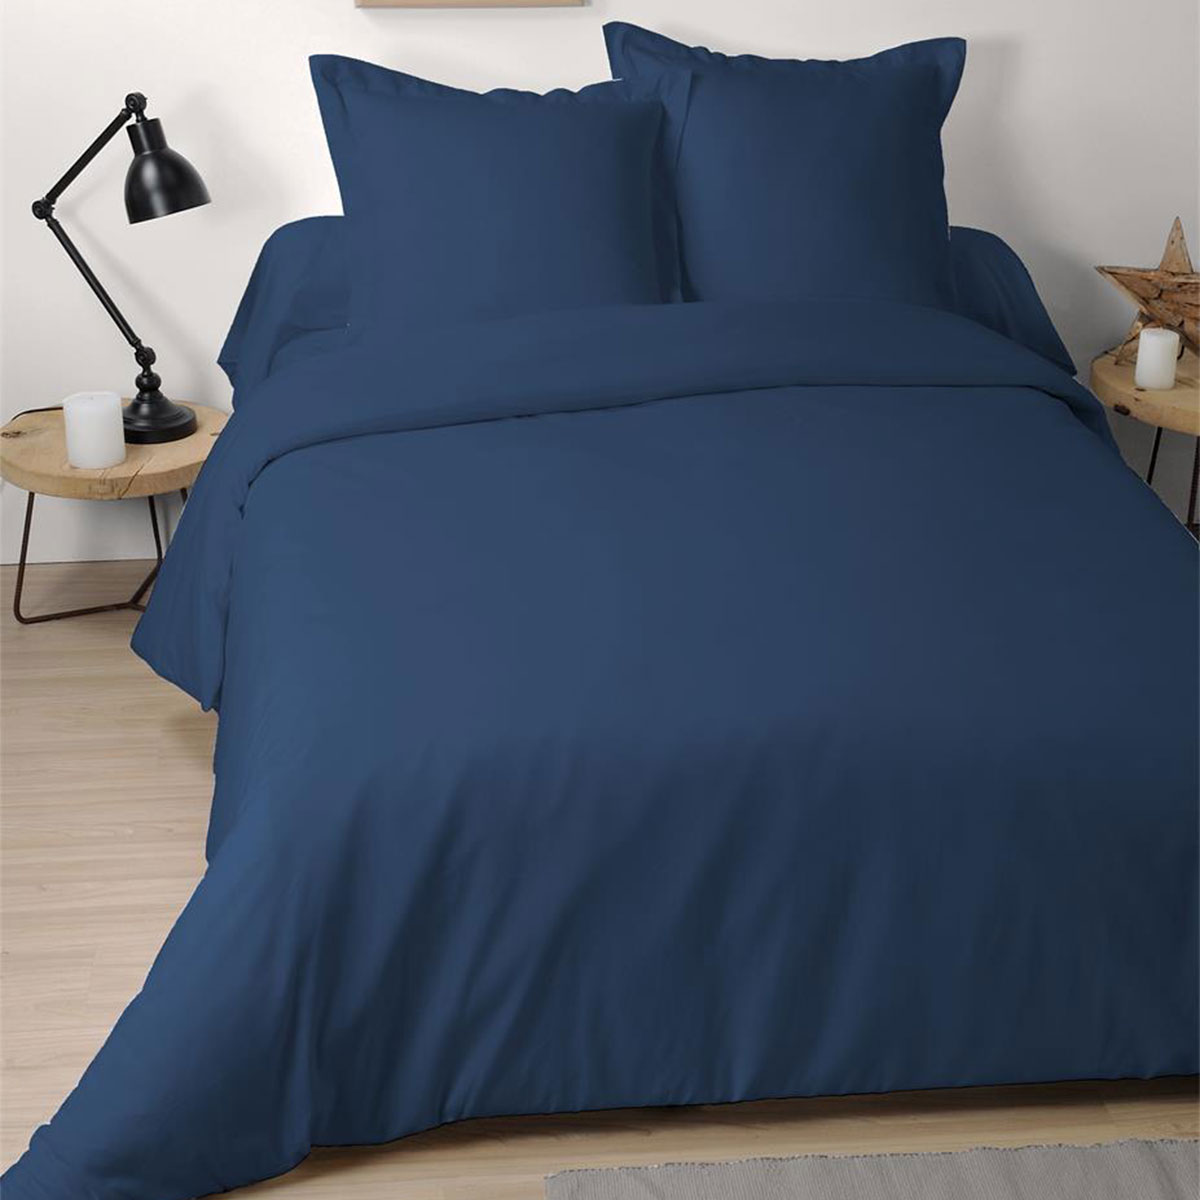 Pillow case 65 x 65 cm - Blue Jean